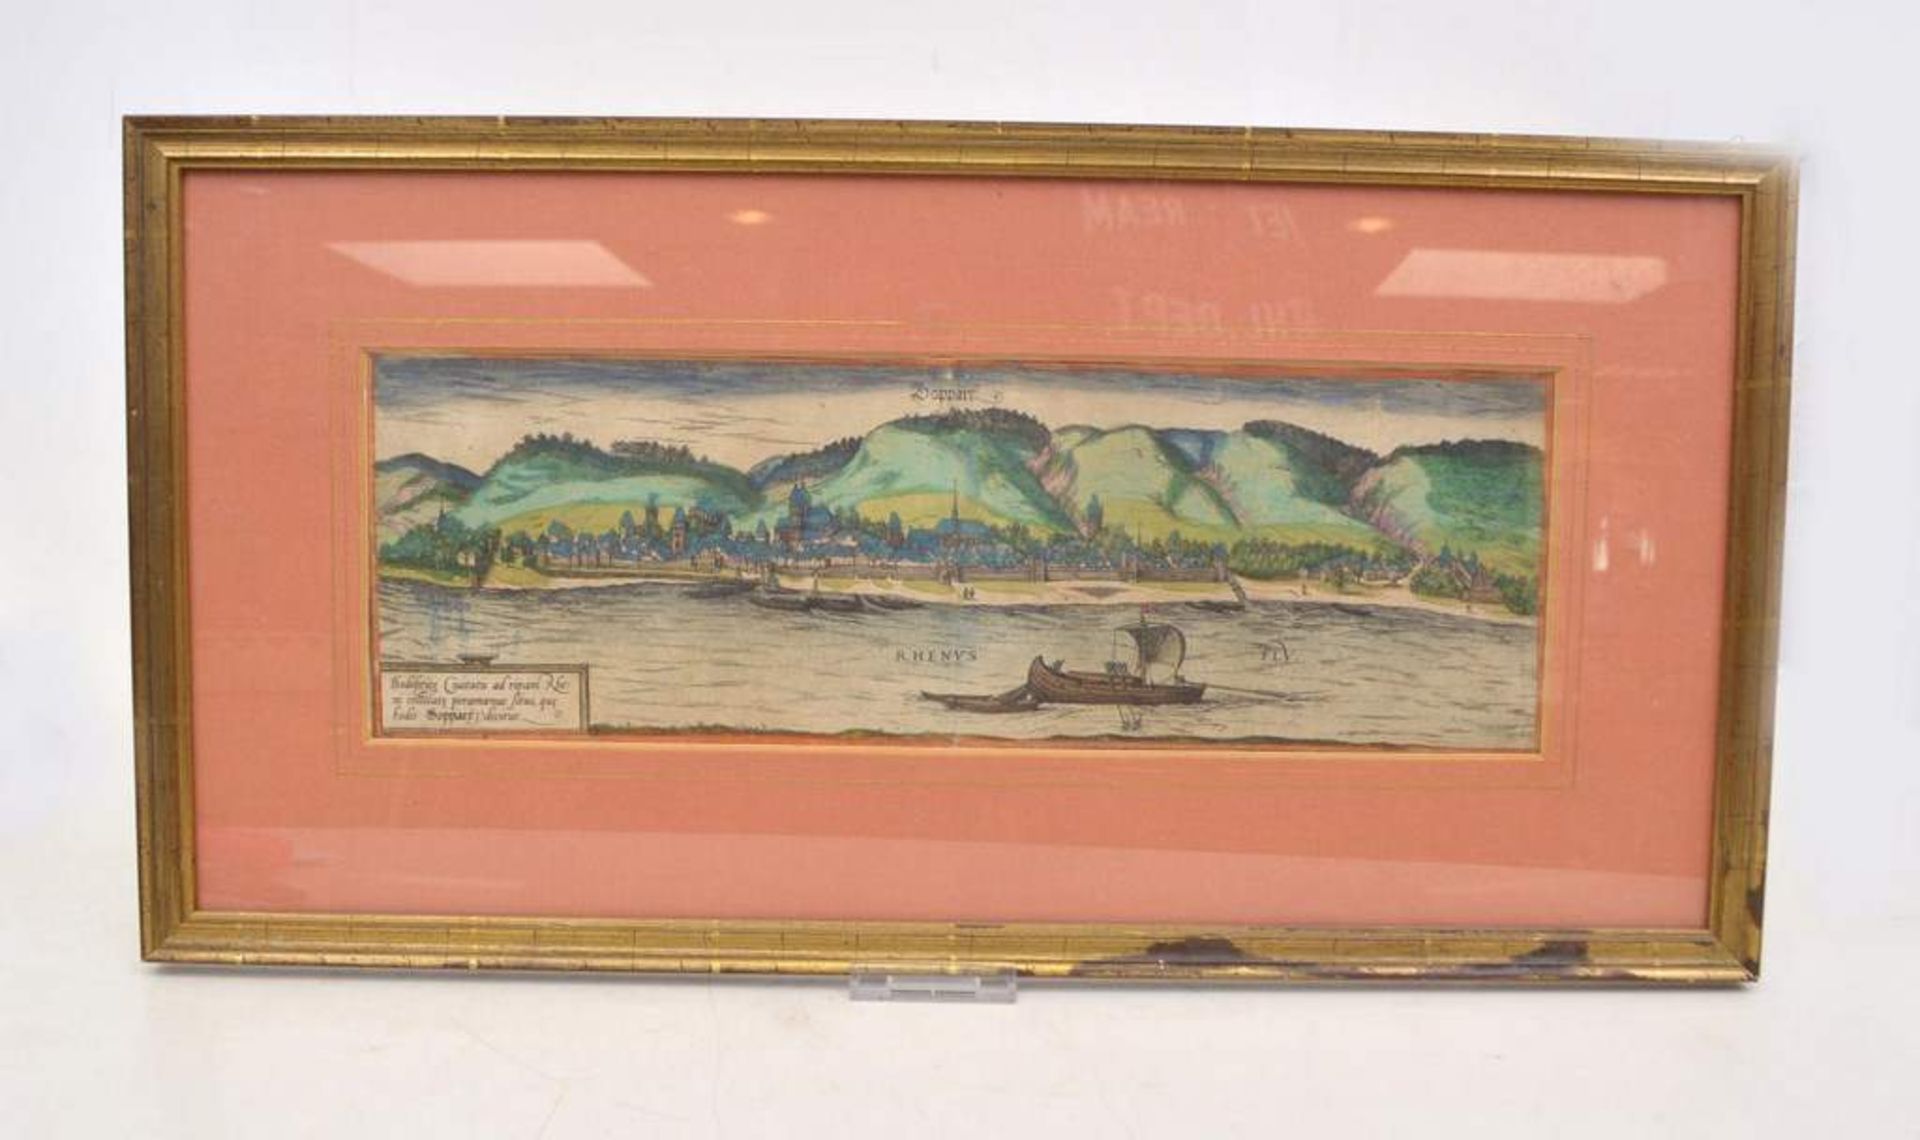 Kupferstich Ansicht von Boppard, mit Flusslauf und Booten, coloriert, im Goldrahmen, 31 X 60 cm, 18.